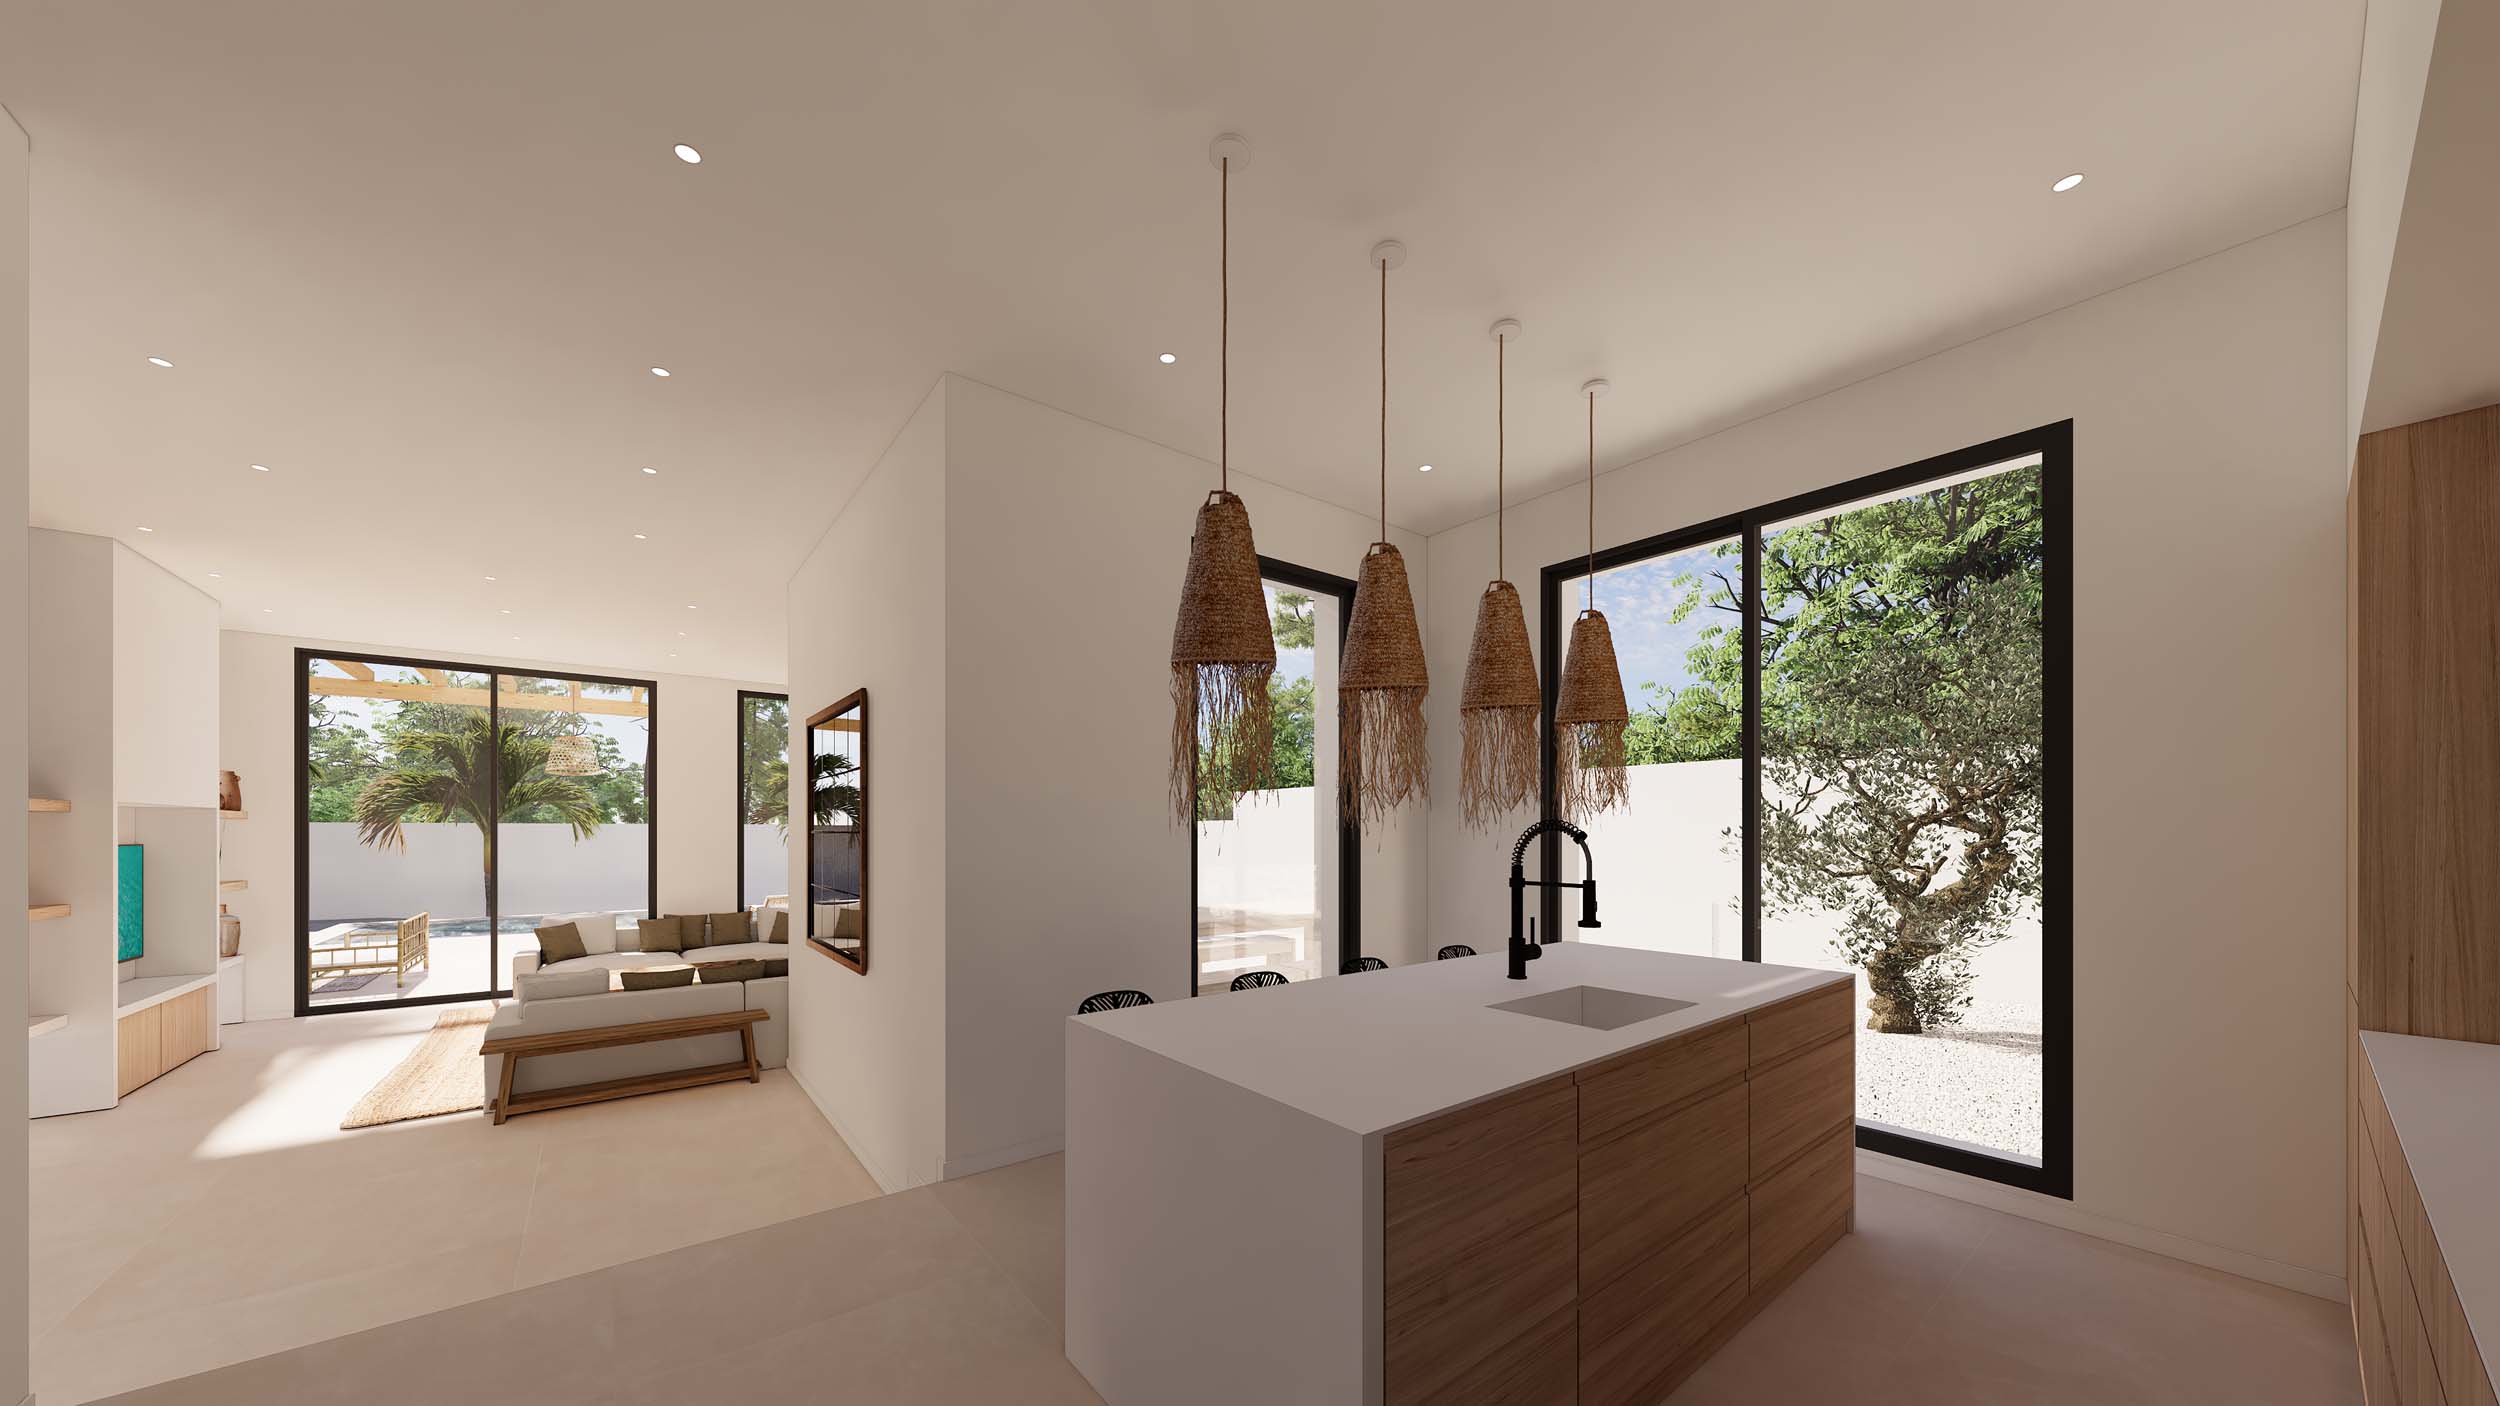 Villa de estilo ibicenco de nueva construcción en venta en Moraira